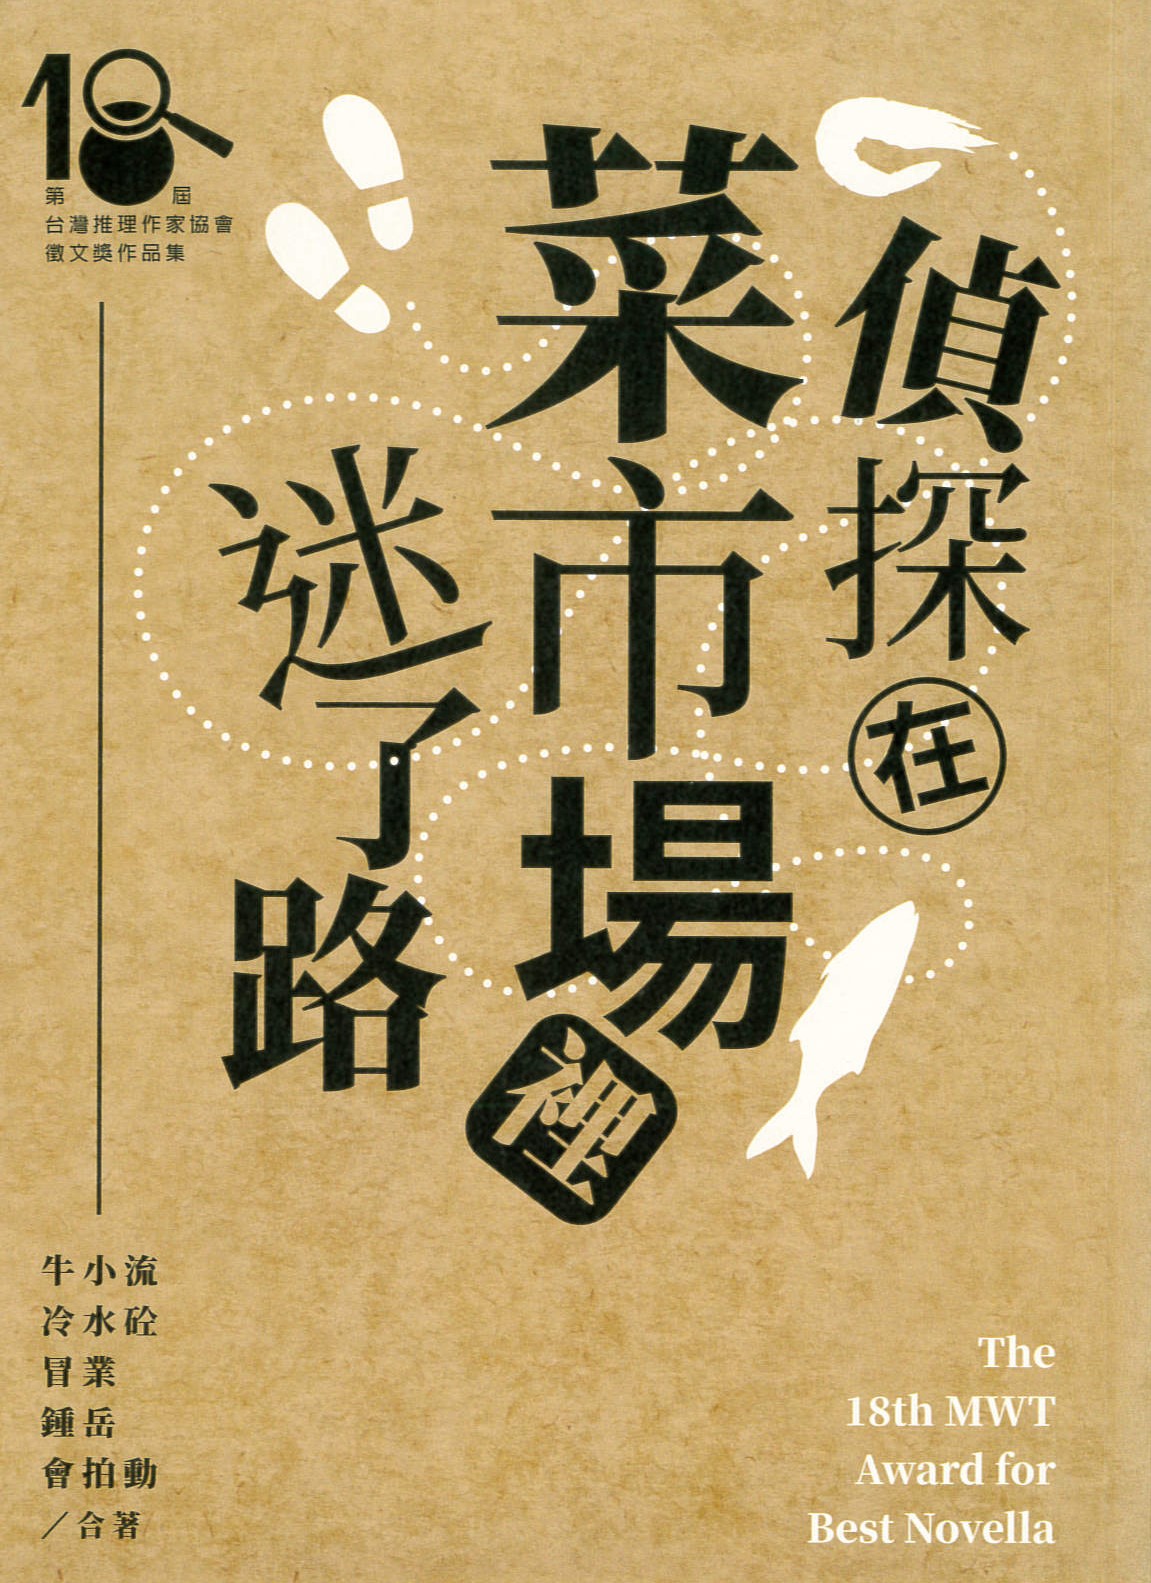 偵探在菜市場裡迷了路 : 第18屆台灣推理作家協會徵文獎作品集 /